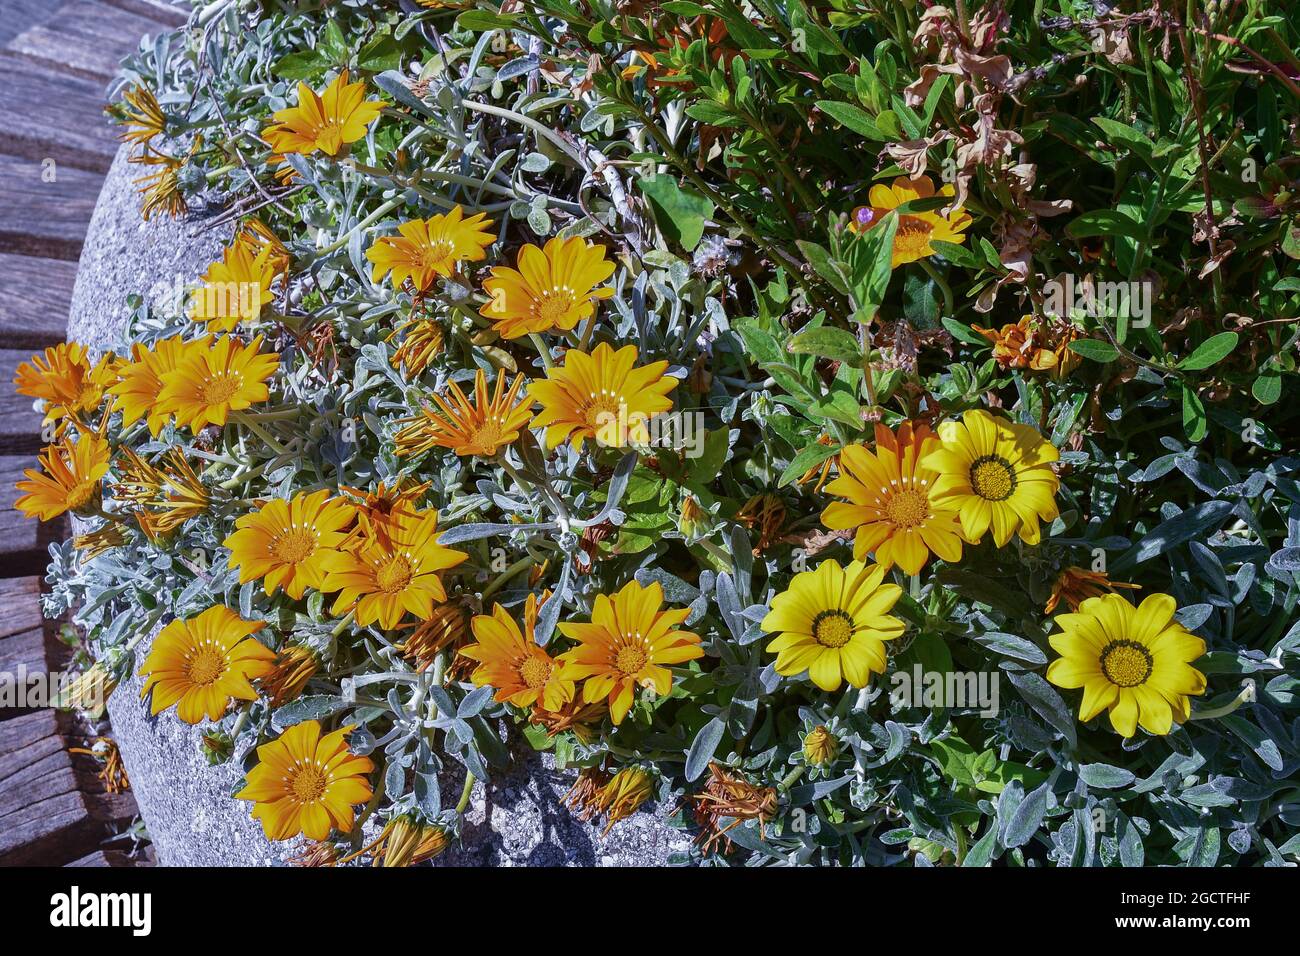 Primo piano di un impianto fiorito di Gazania con teste a margherita composite in brillanti sfumature di giallo e arancione, Genova, Liguria, Italia Foto Stock